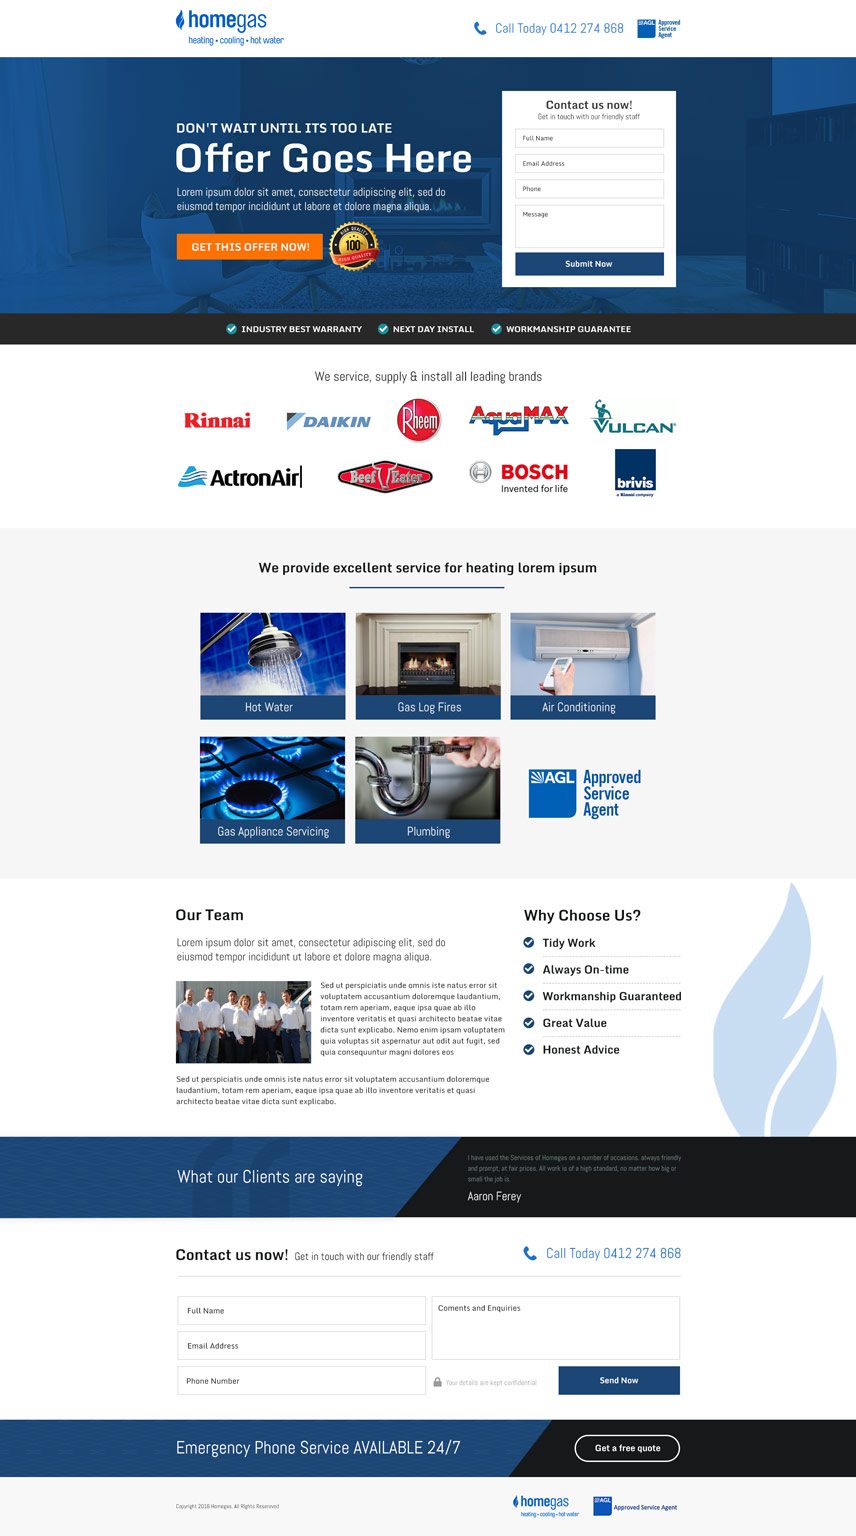 Home Gas website design